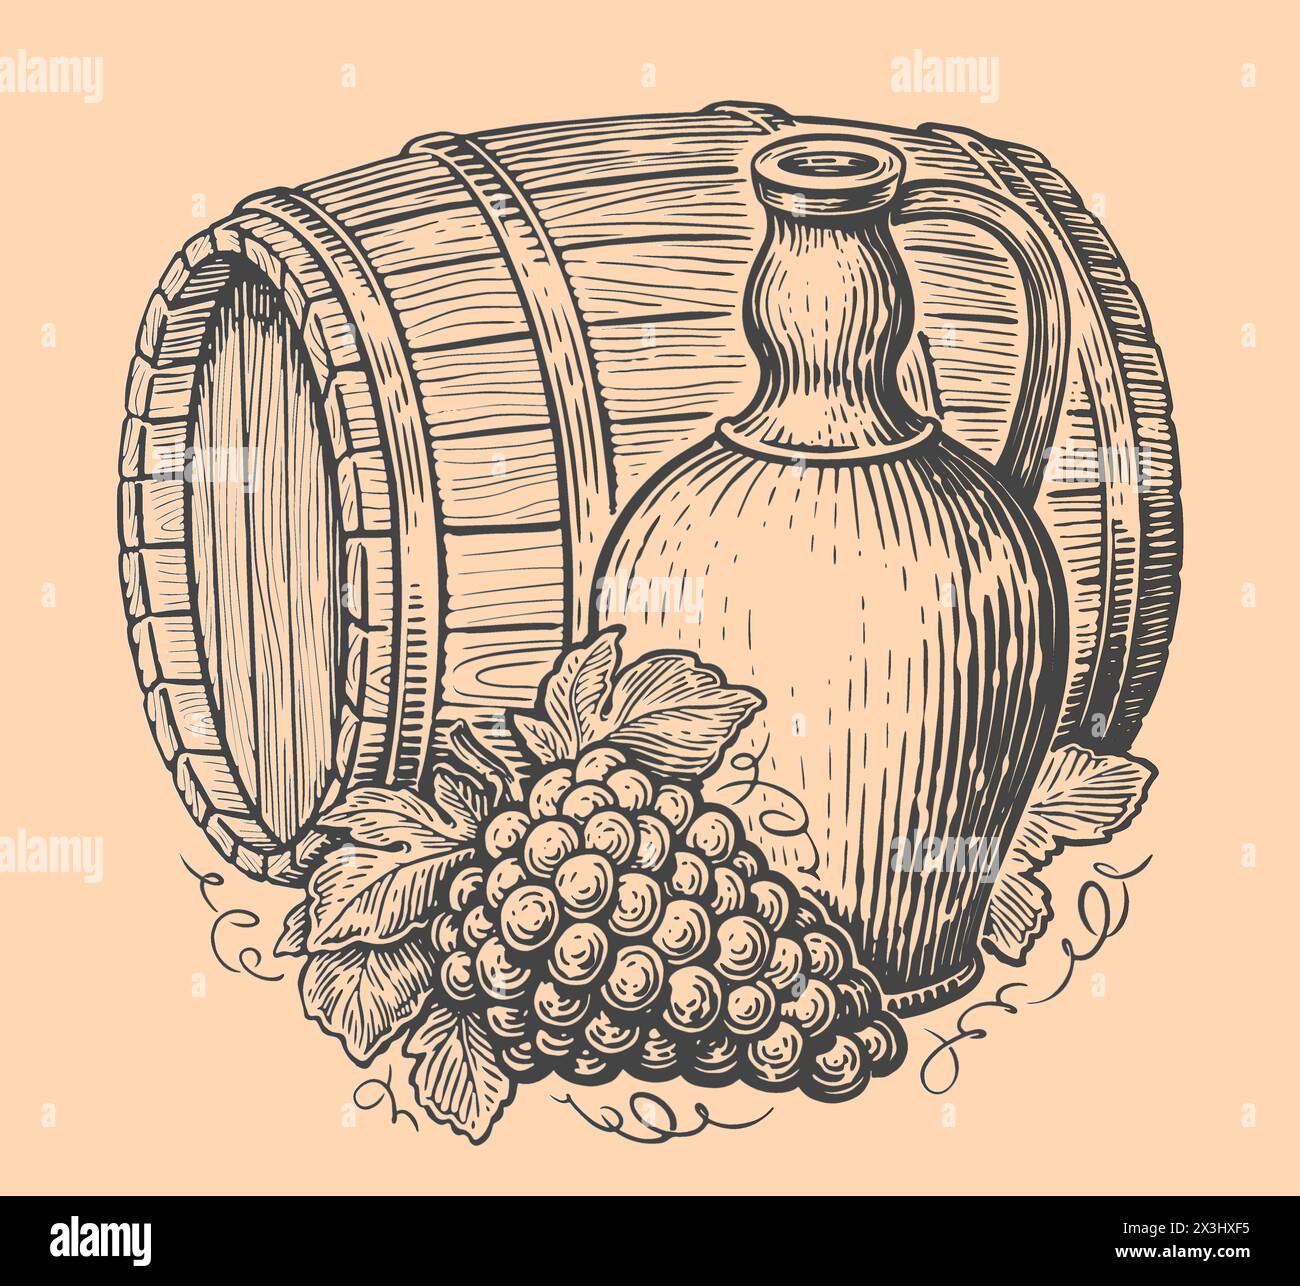 Concept de boisson au vin. Cruche, bouquet de raisins et tonneau en bois. Croquis d'illustration vectorielle vintage Illustration de Vecteur